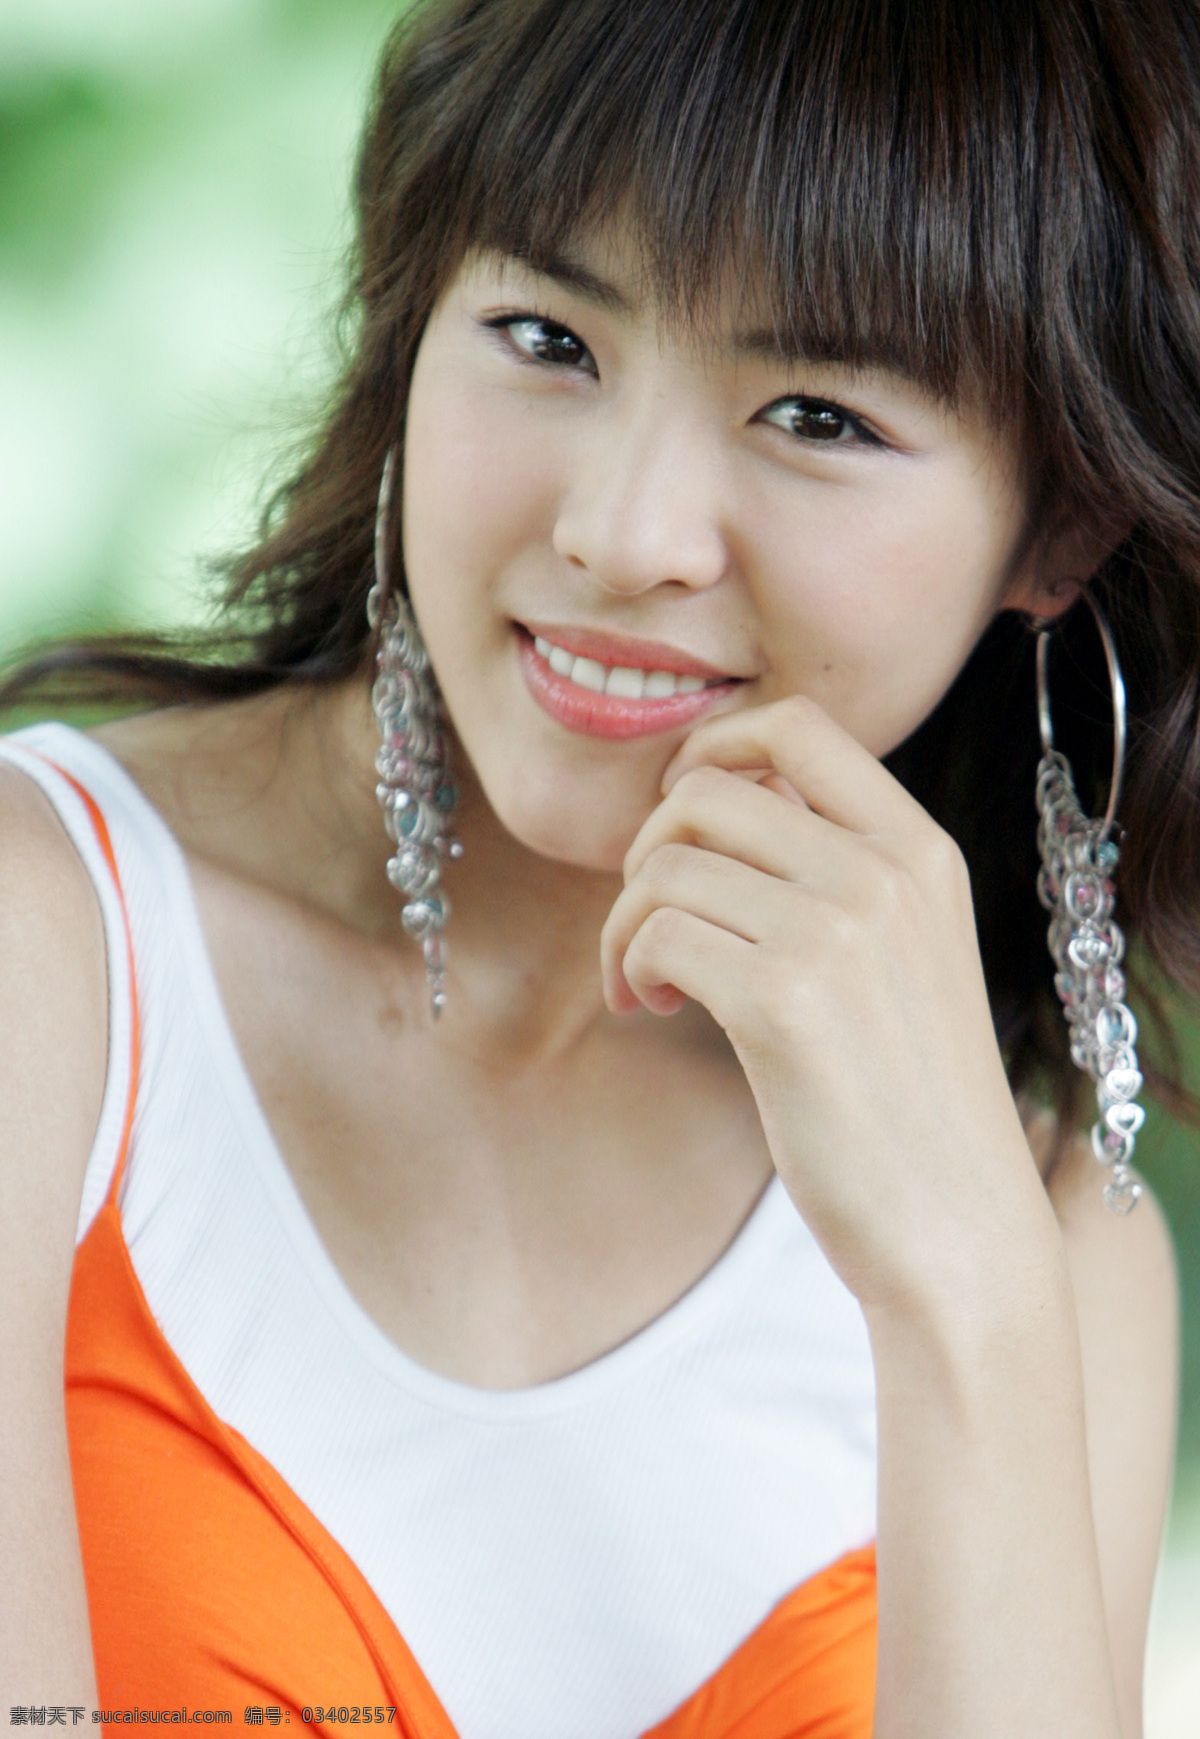 性感 韩国 女明星 明星偶像 女性 女人 时尚美女 明星 性感美女 美女模特 美女写真 名人明星 明星图片 人物图片